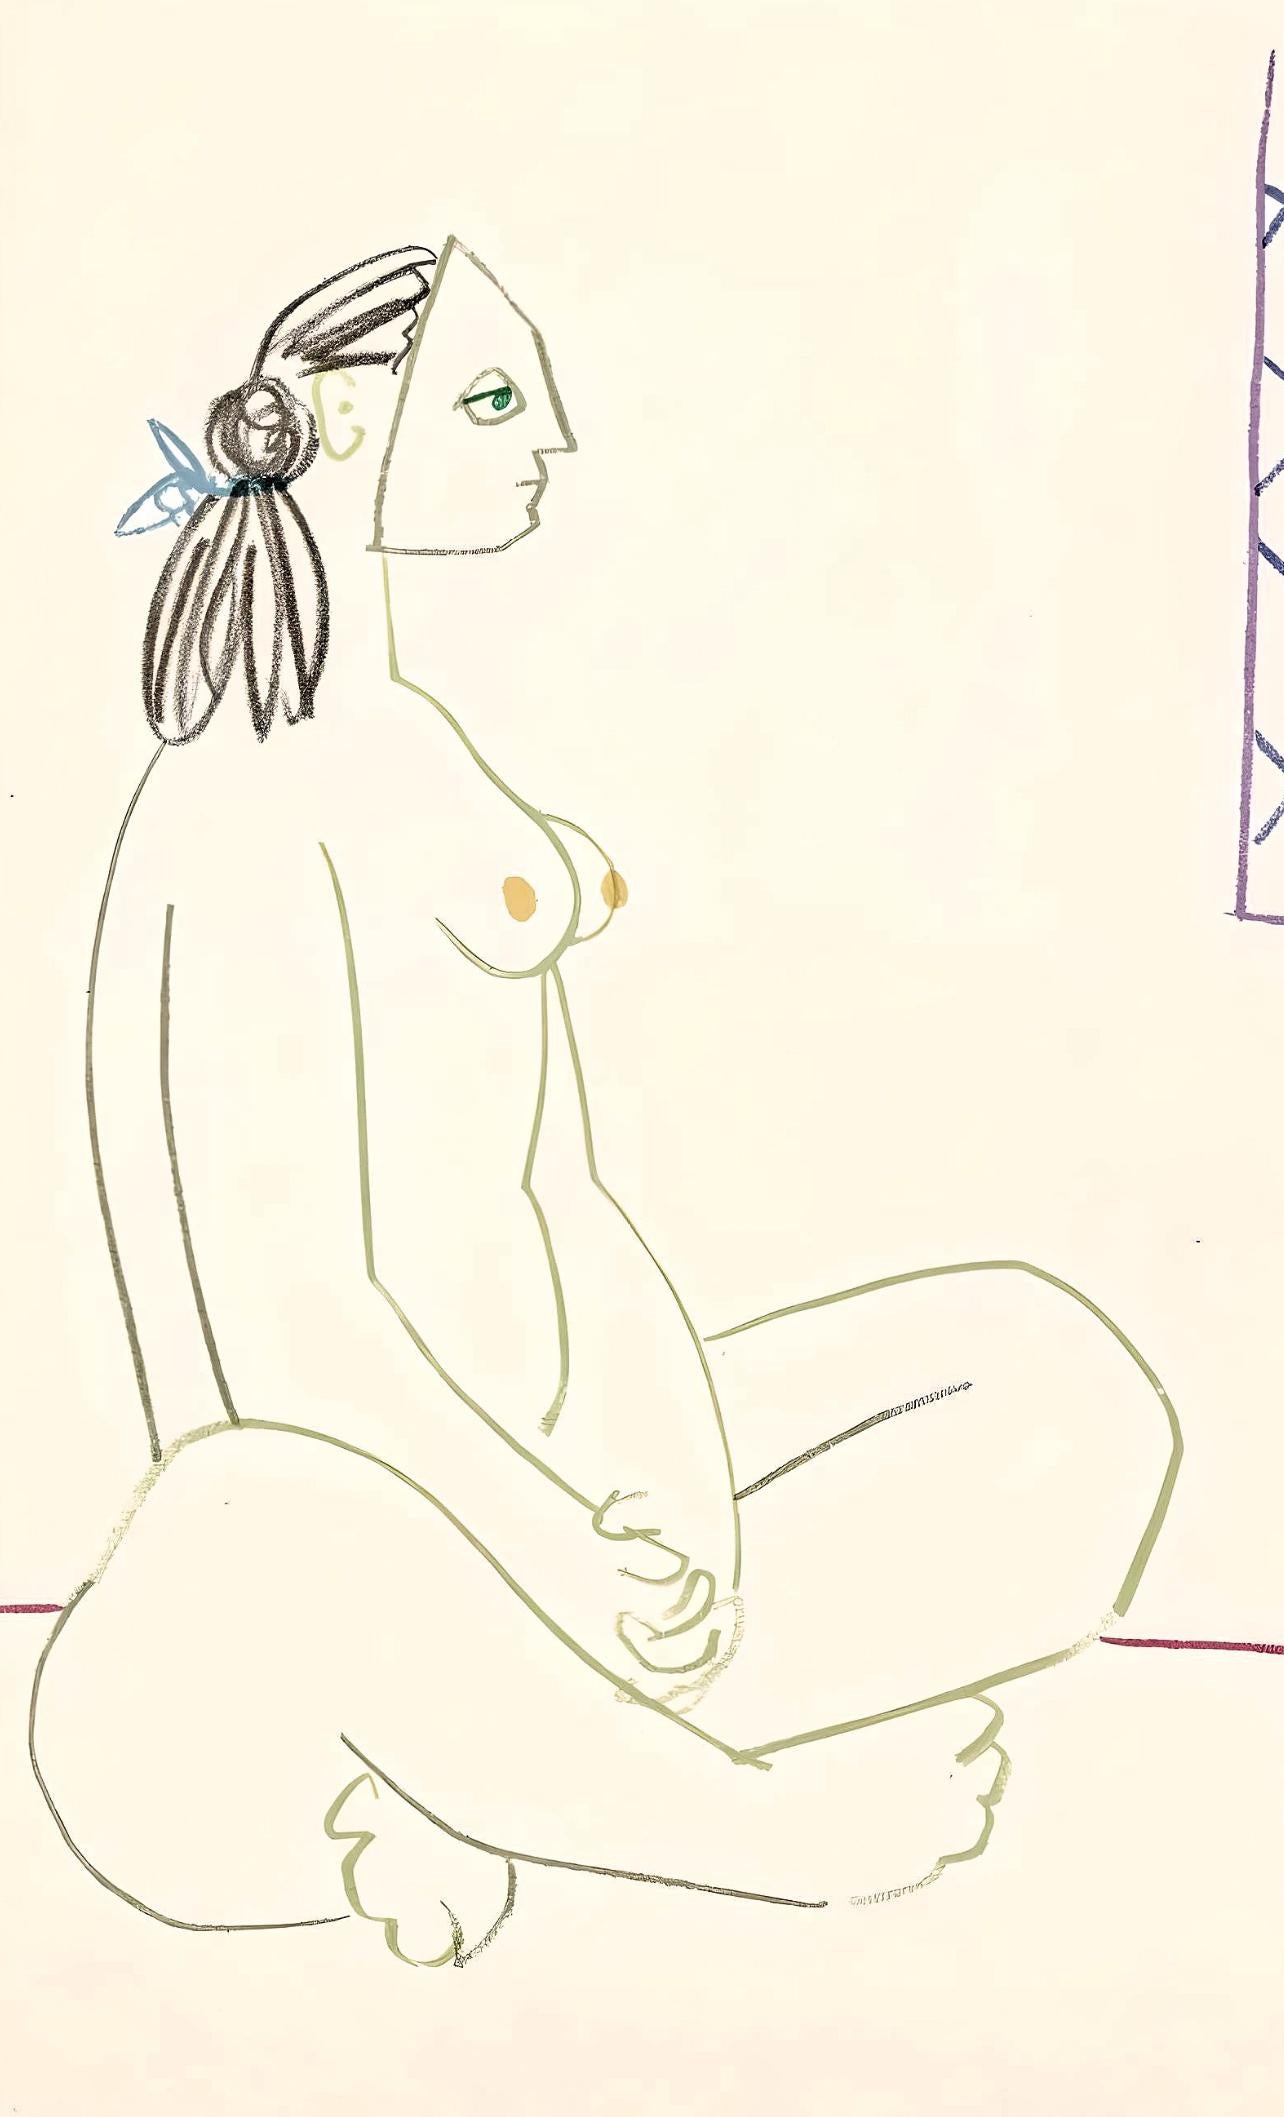 Picasso, Composition, La Comédie Humaine (d'après) - Cubisme Print par Pablo Picasso